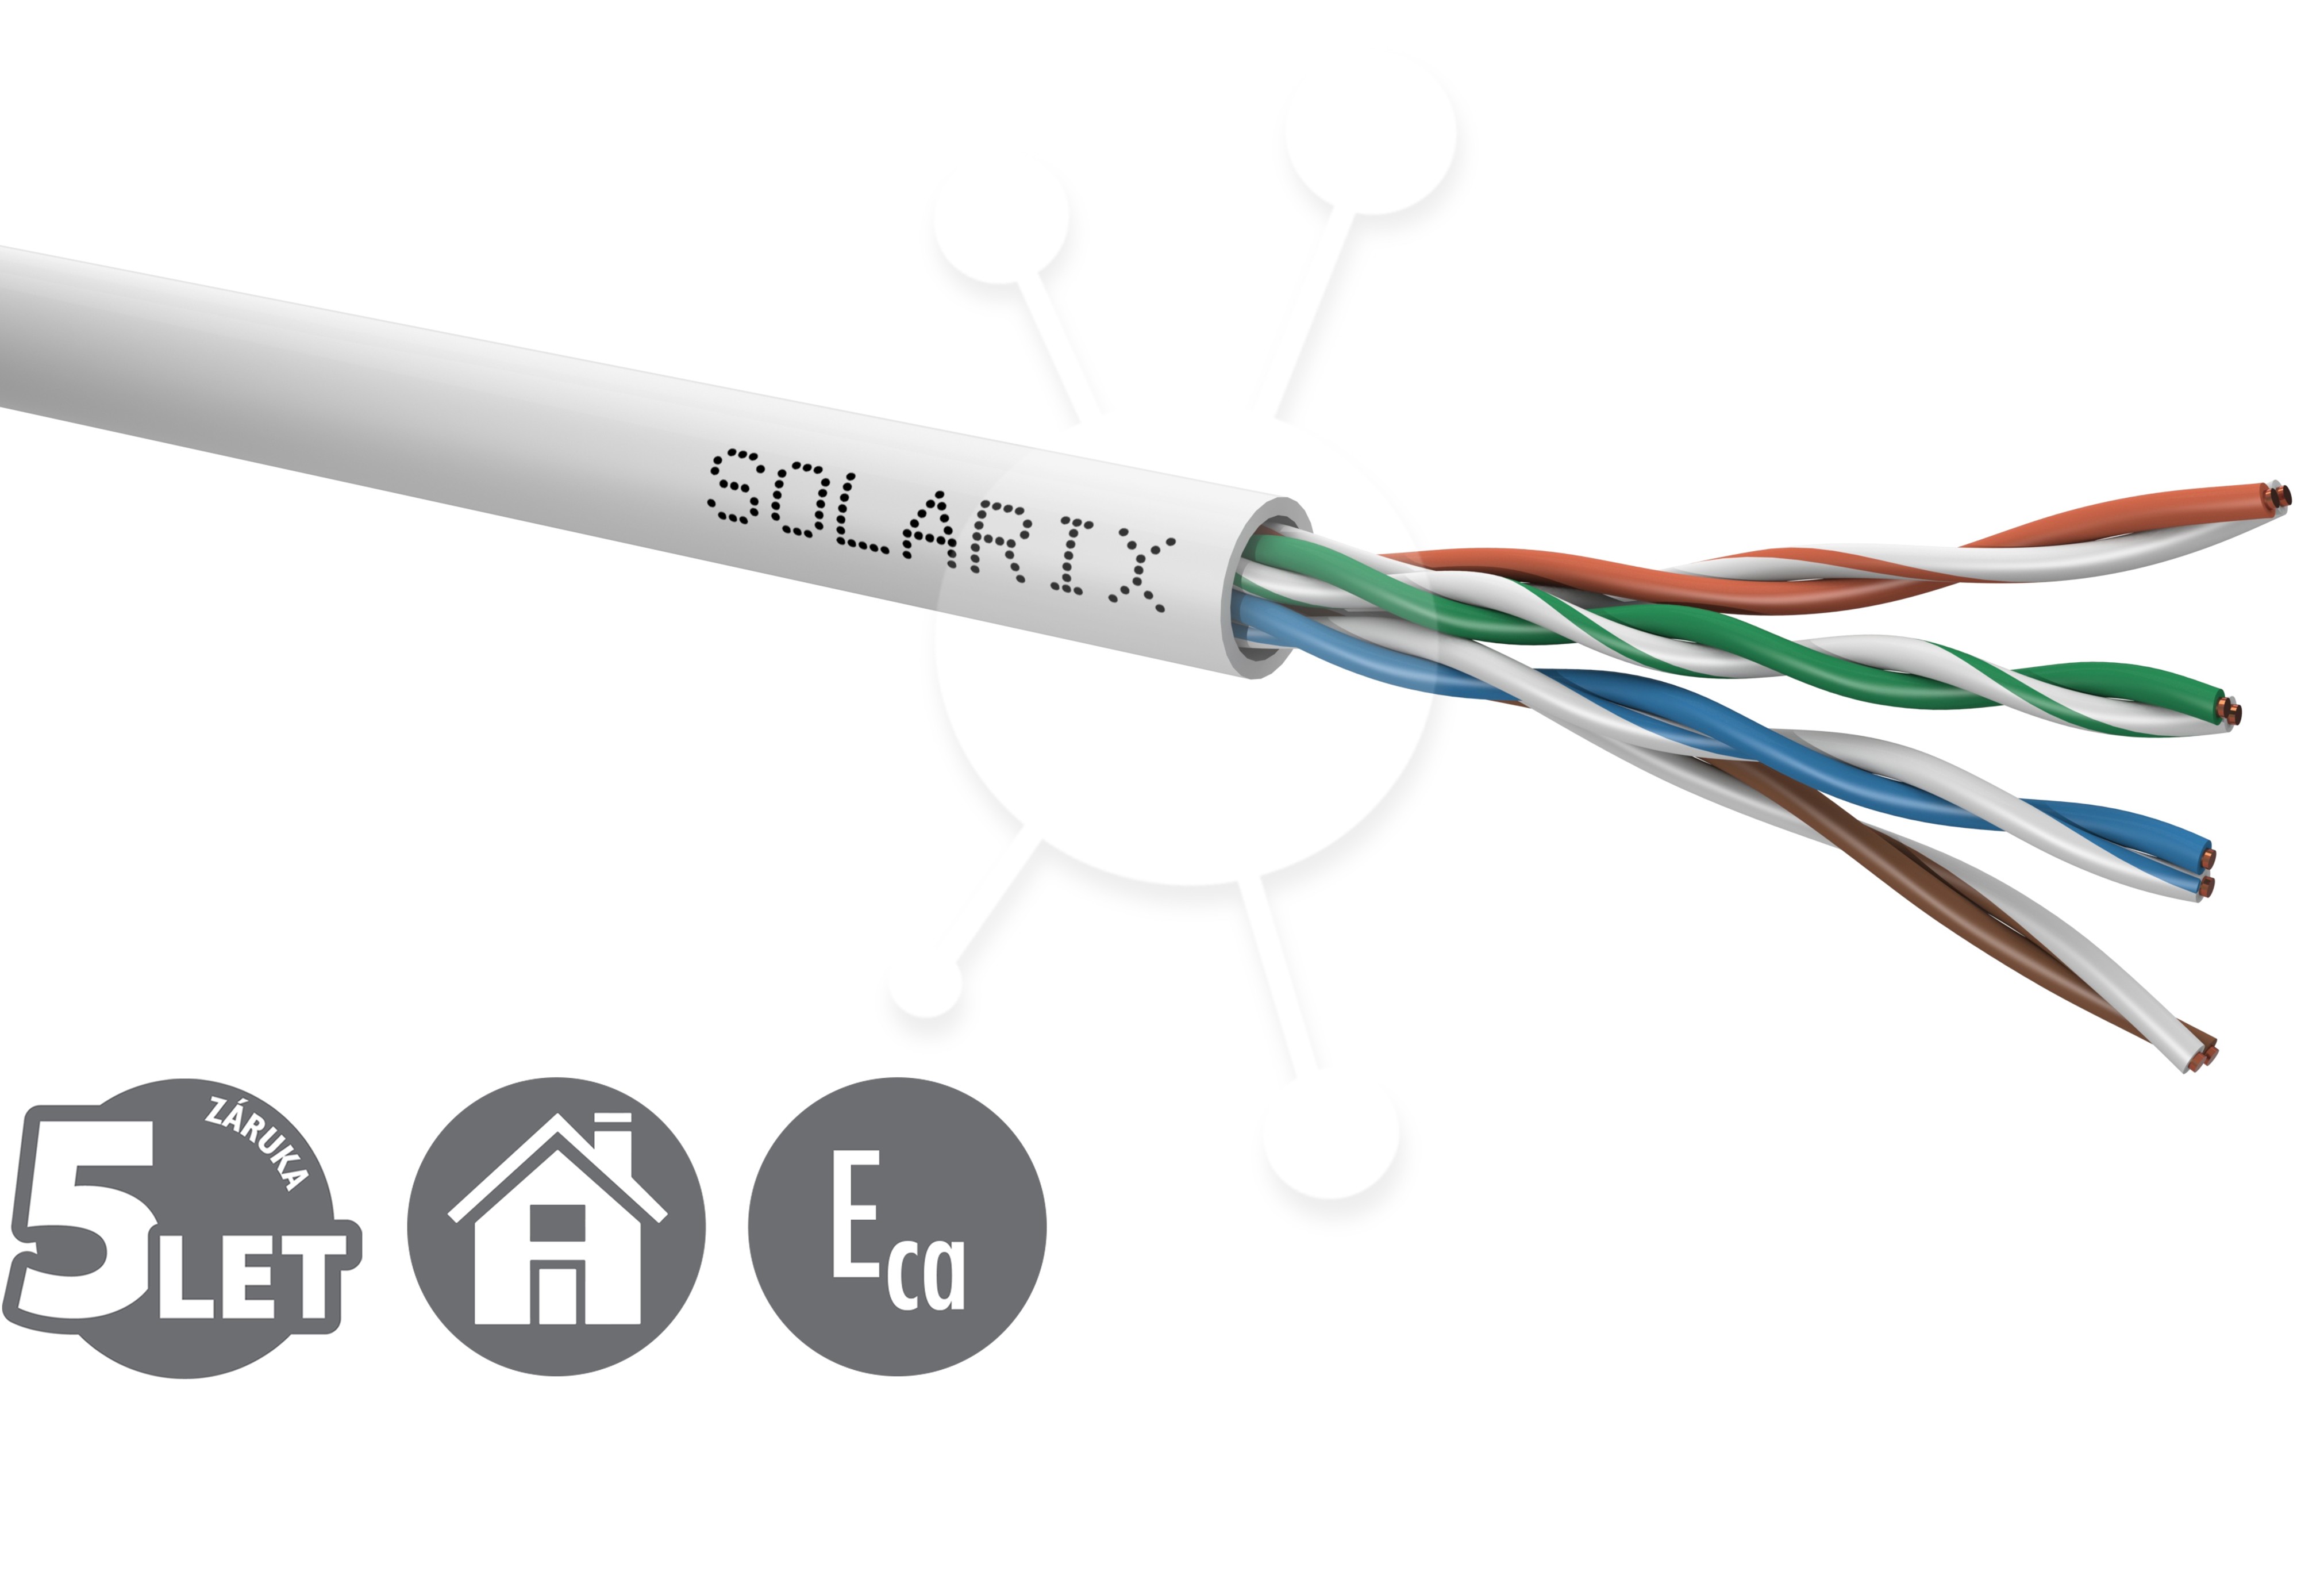 Instalační kabel Solarix CAT5E UTP PVC Eca 500m/box SXKD-5E-UTP-PVC